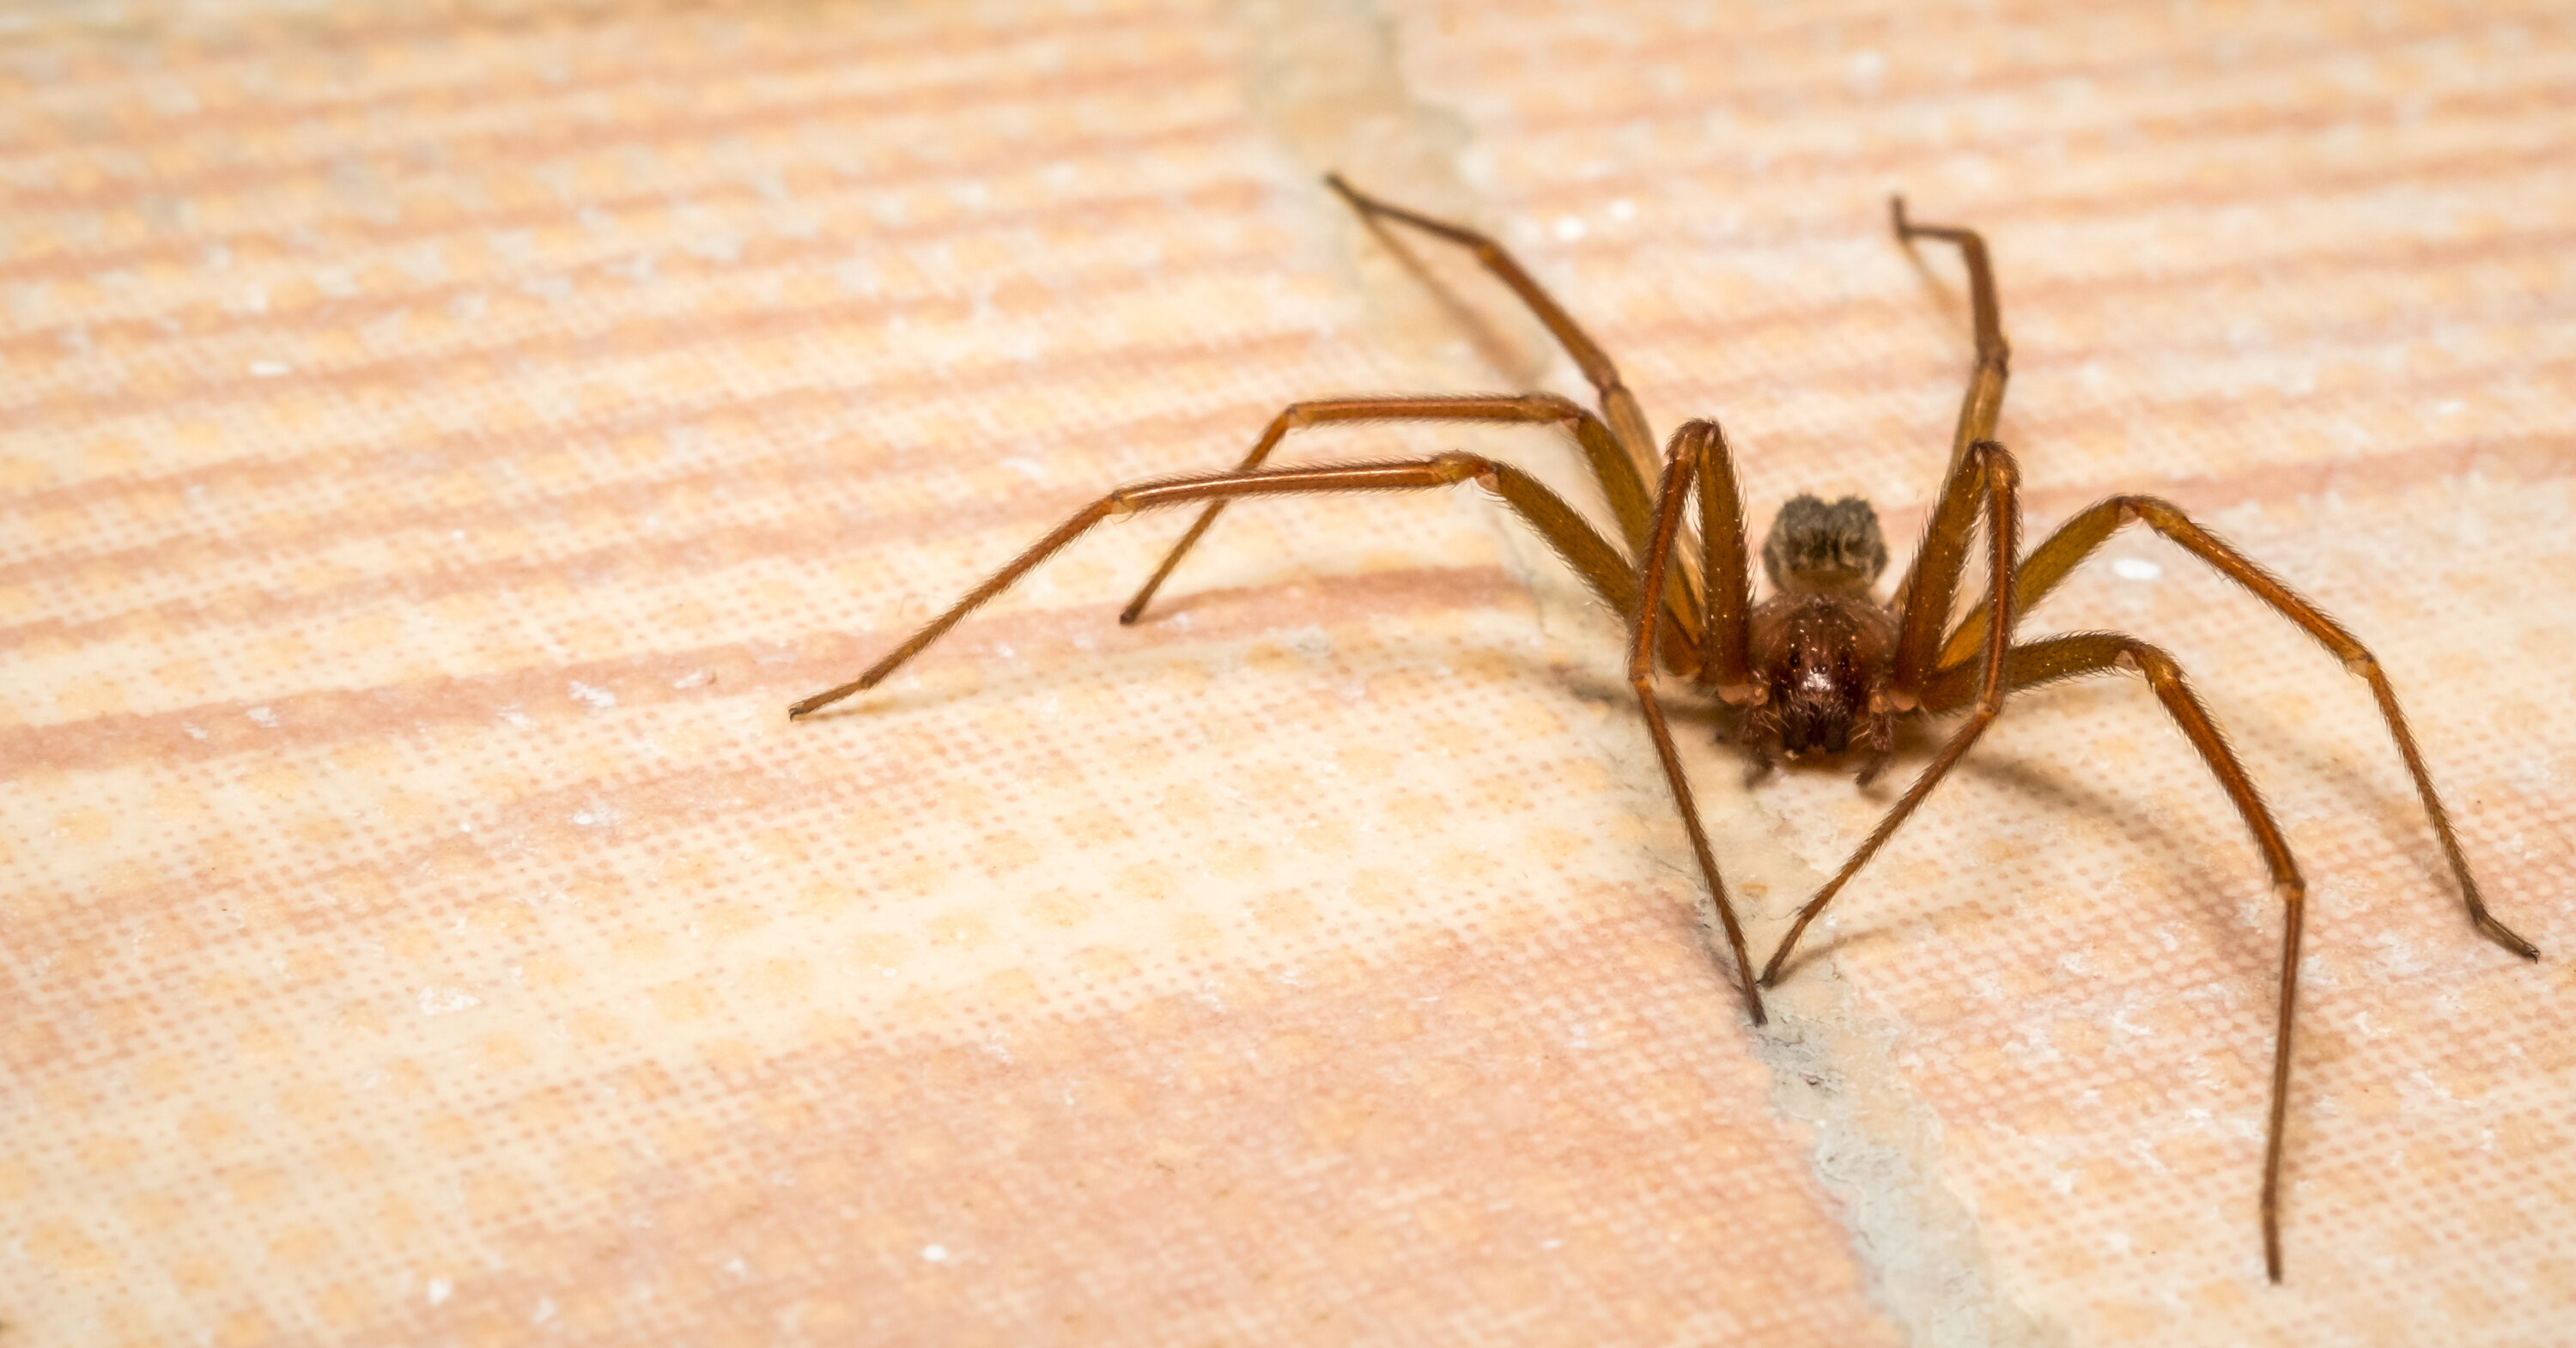 近距离拍摄一只棕色隐士蜘蛛在铺着瓷砖的棕褐色地板上